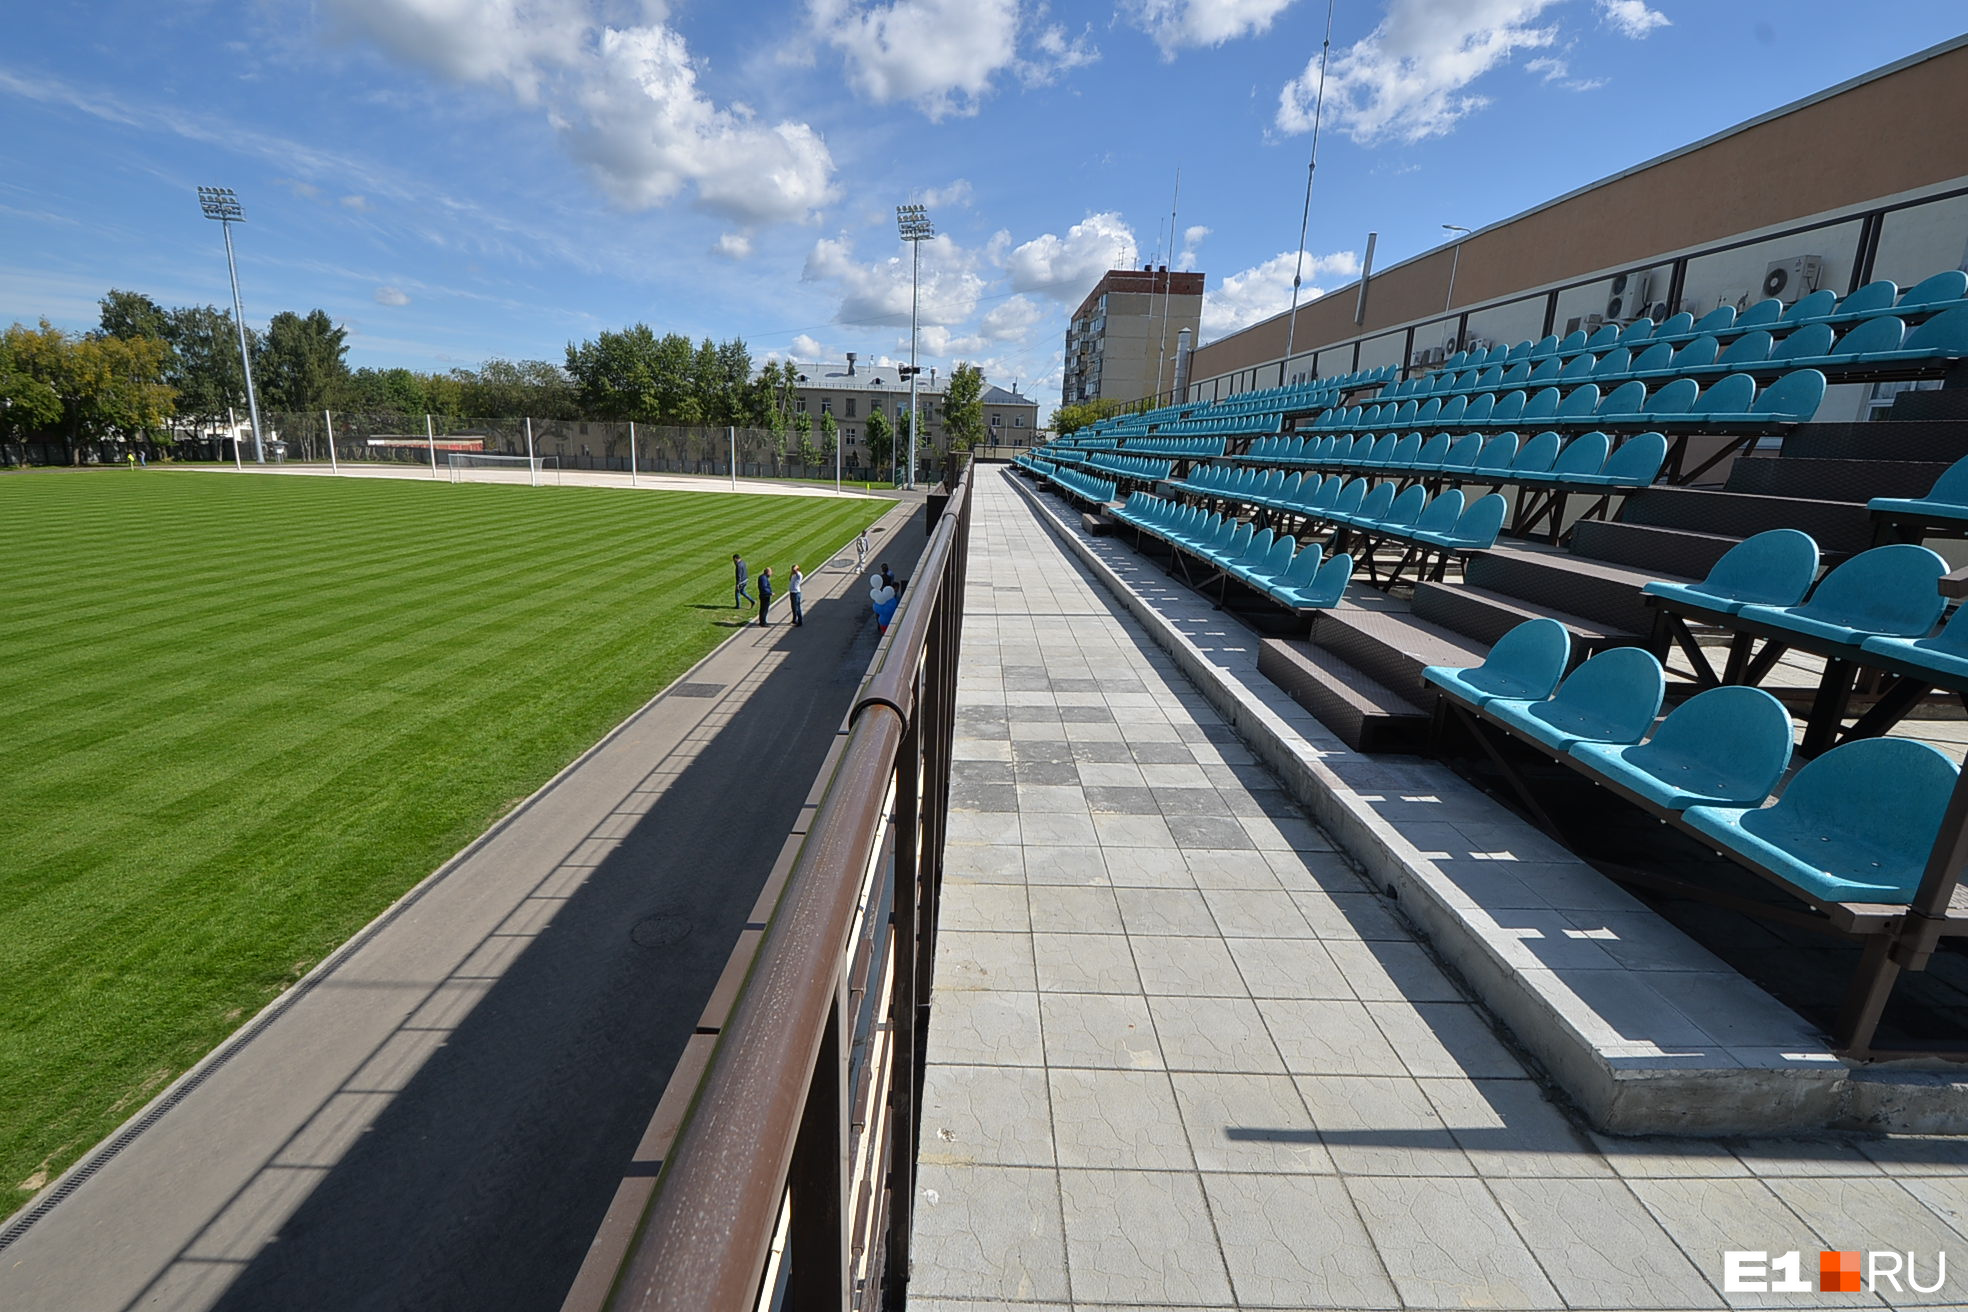 Это, например, поле спортивной школы при футбольном клубе «Урал» на Комвузовской